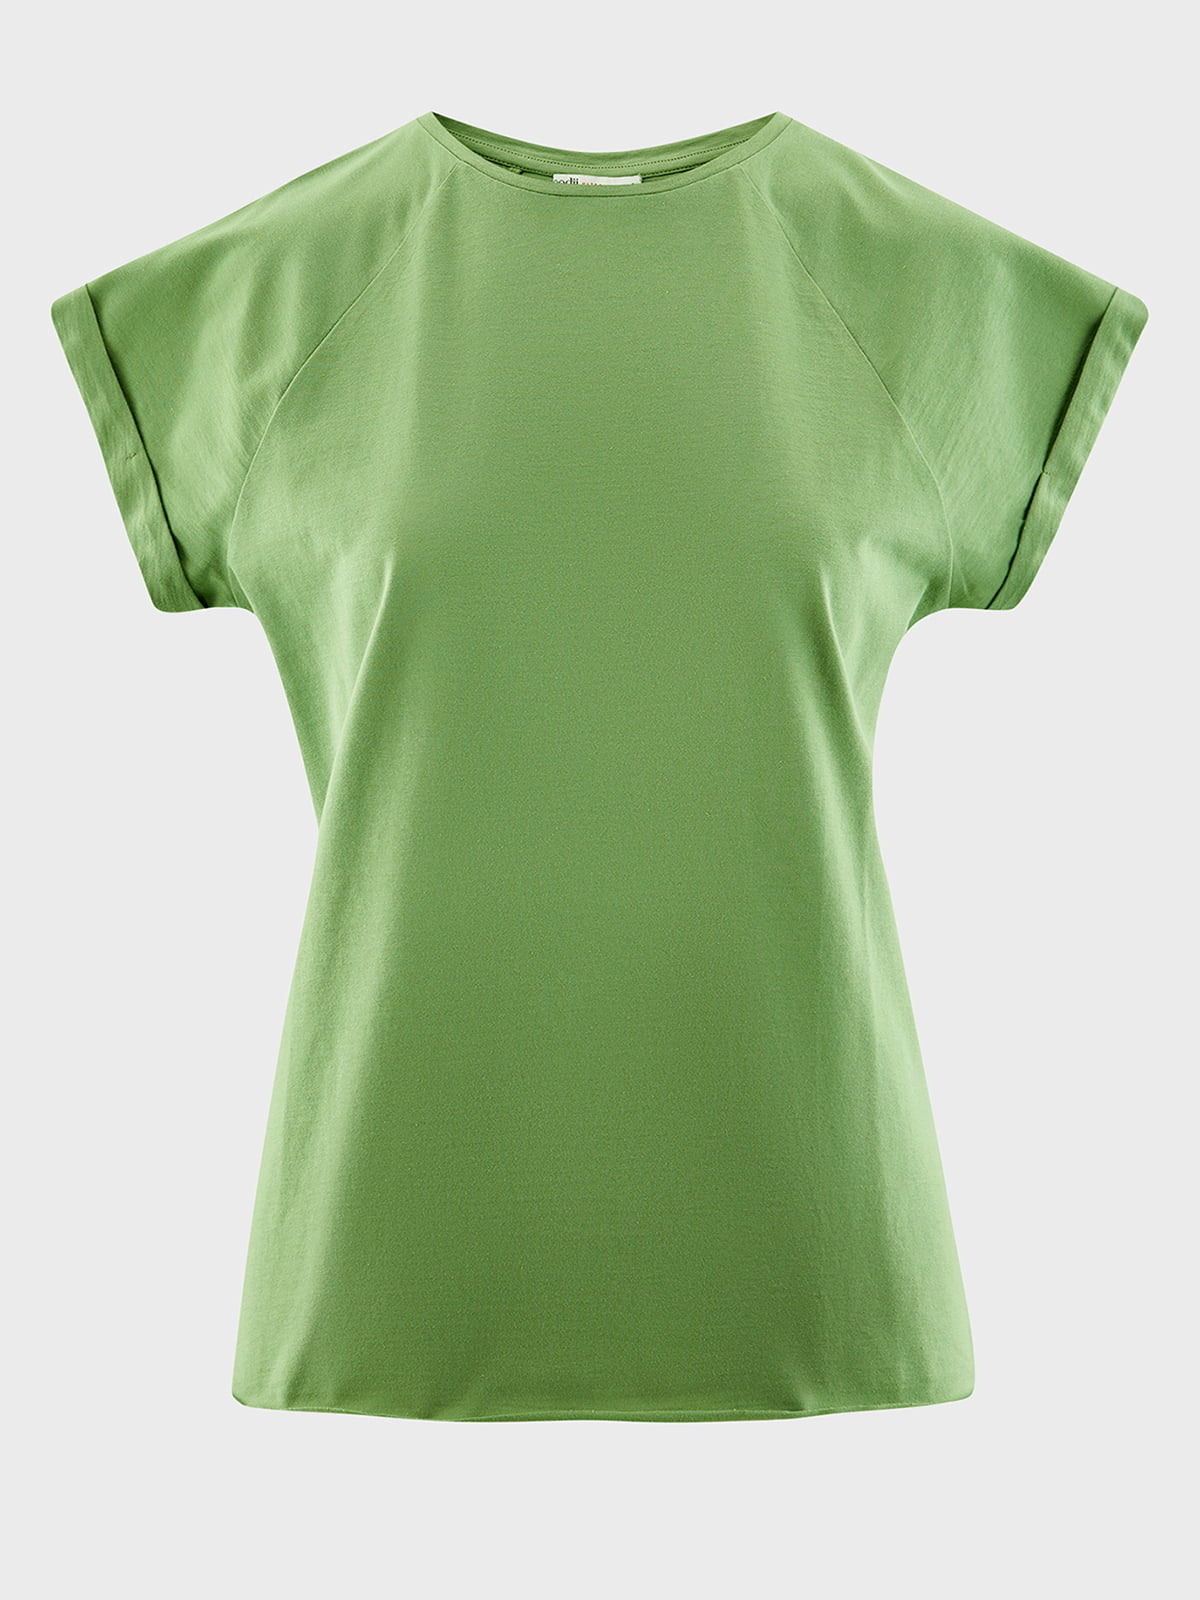 Где купить хорошую базовую футболку. Зелёная футболка женская. Футболка зеленого цвета женская. Футболка женская Базовая зеленая. Зеленая майка.